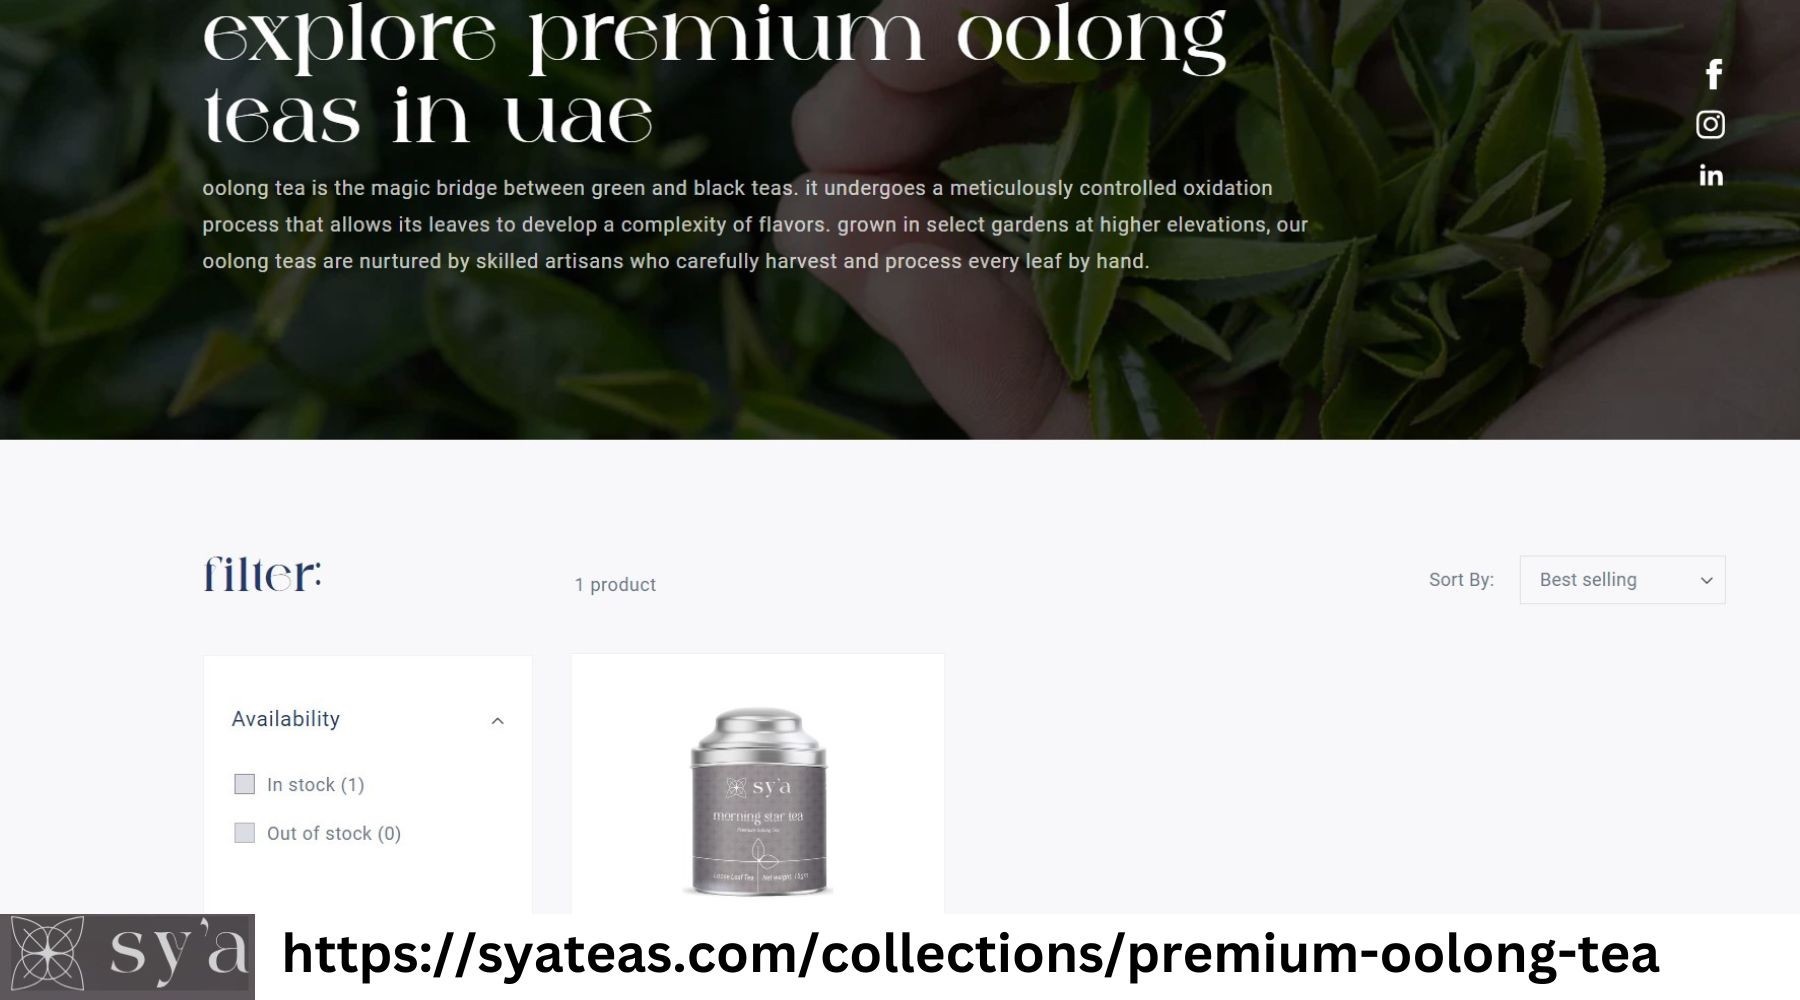 Explore premium oolong teas in uae